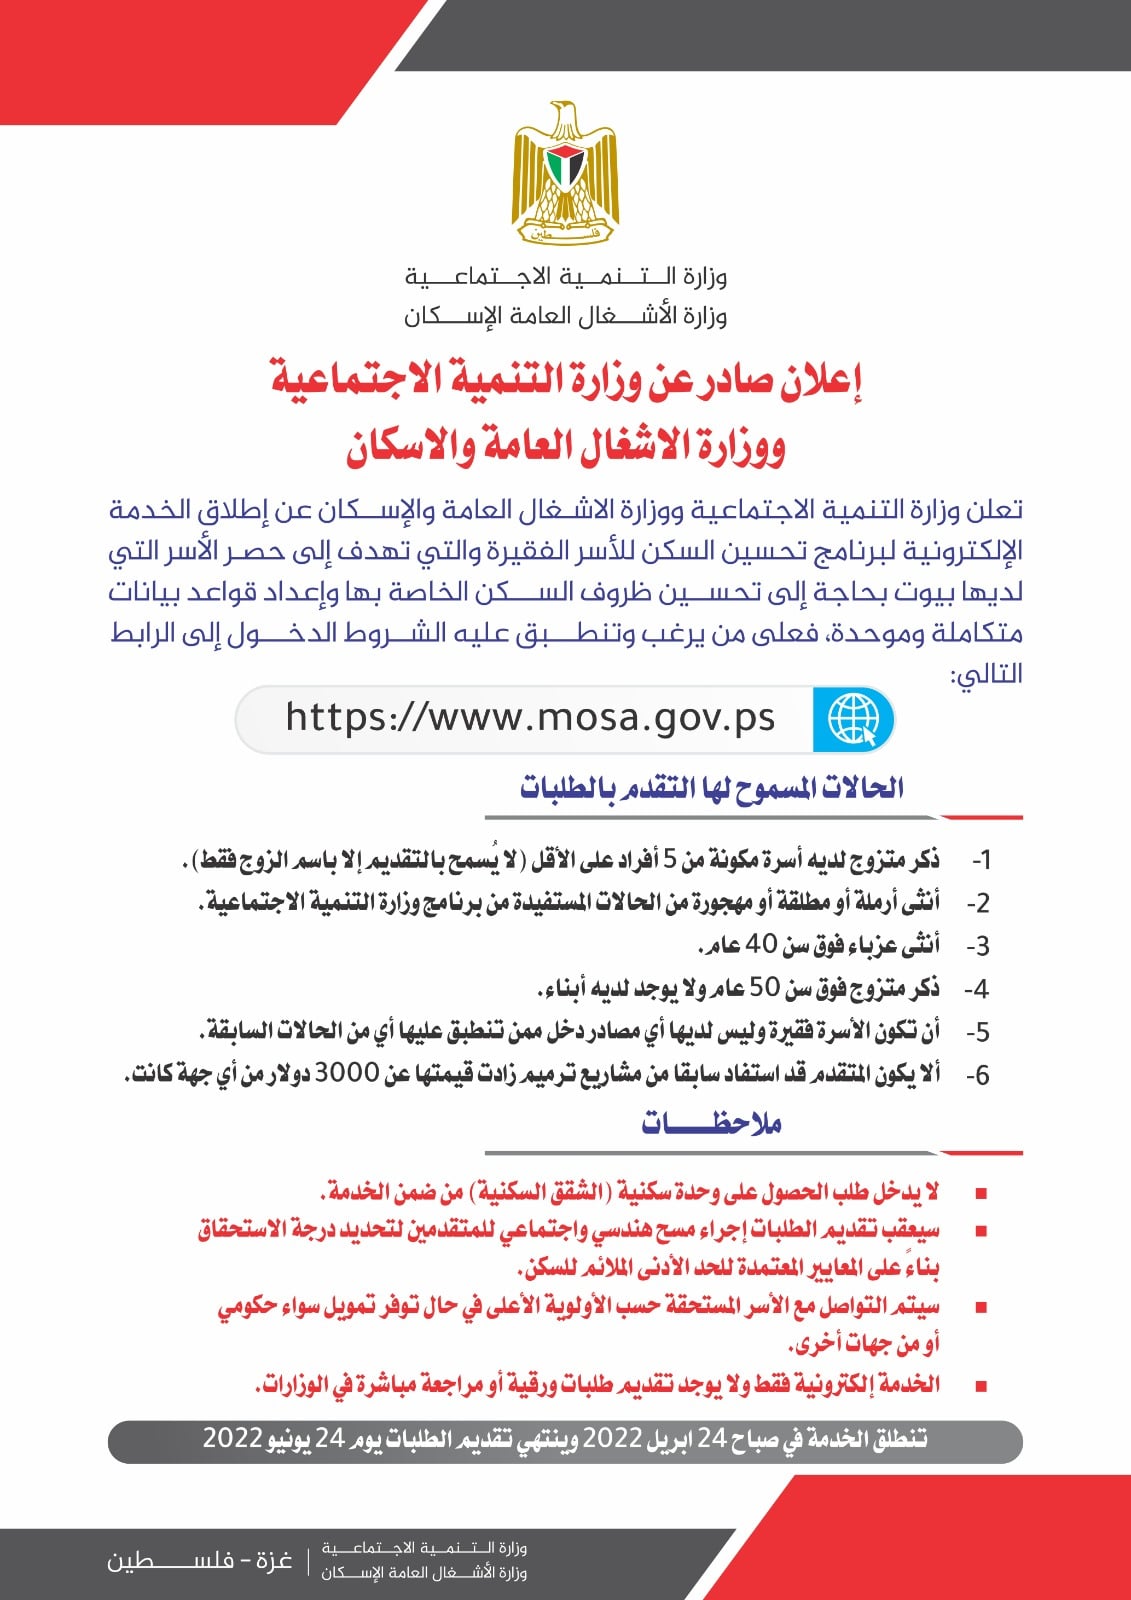  التسجيل علي رابط وزارة الشؤون الاجتماعية الأسر الفقيرة - 24 News